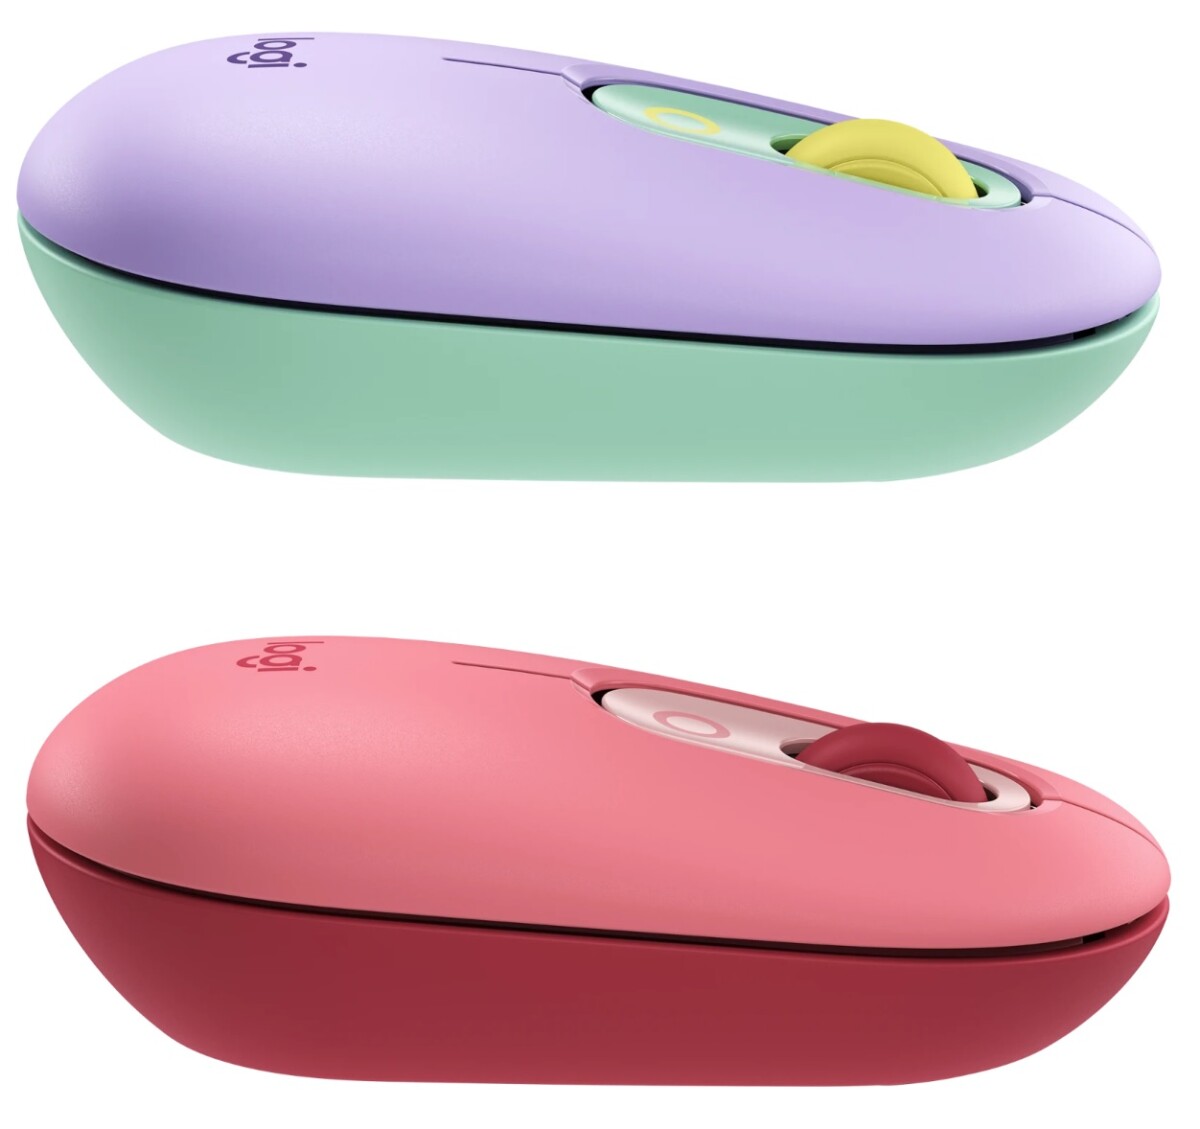 Logitech-POP-Mouse-Review-Colors  